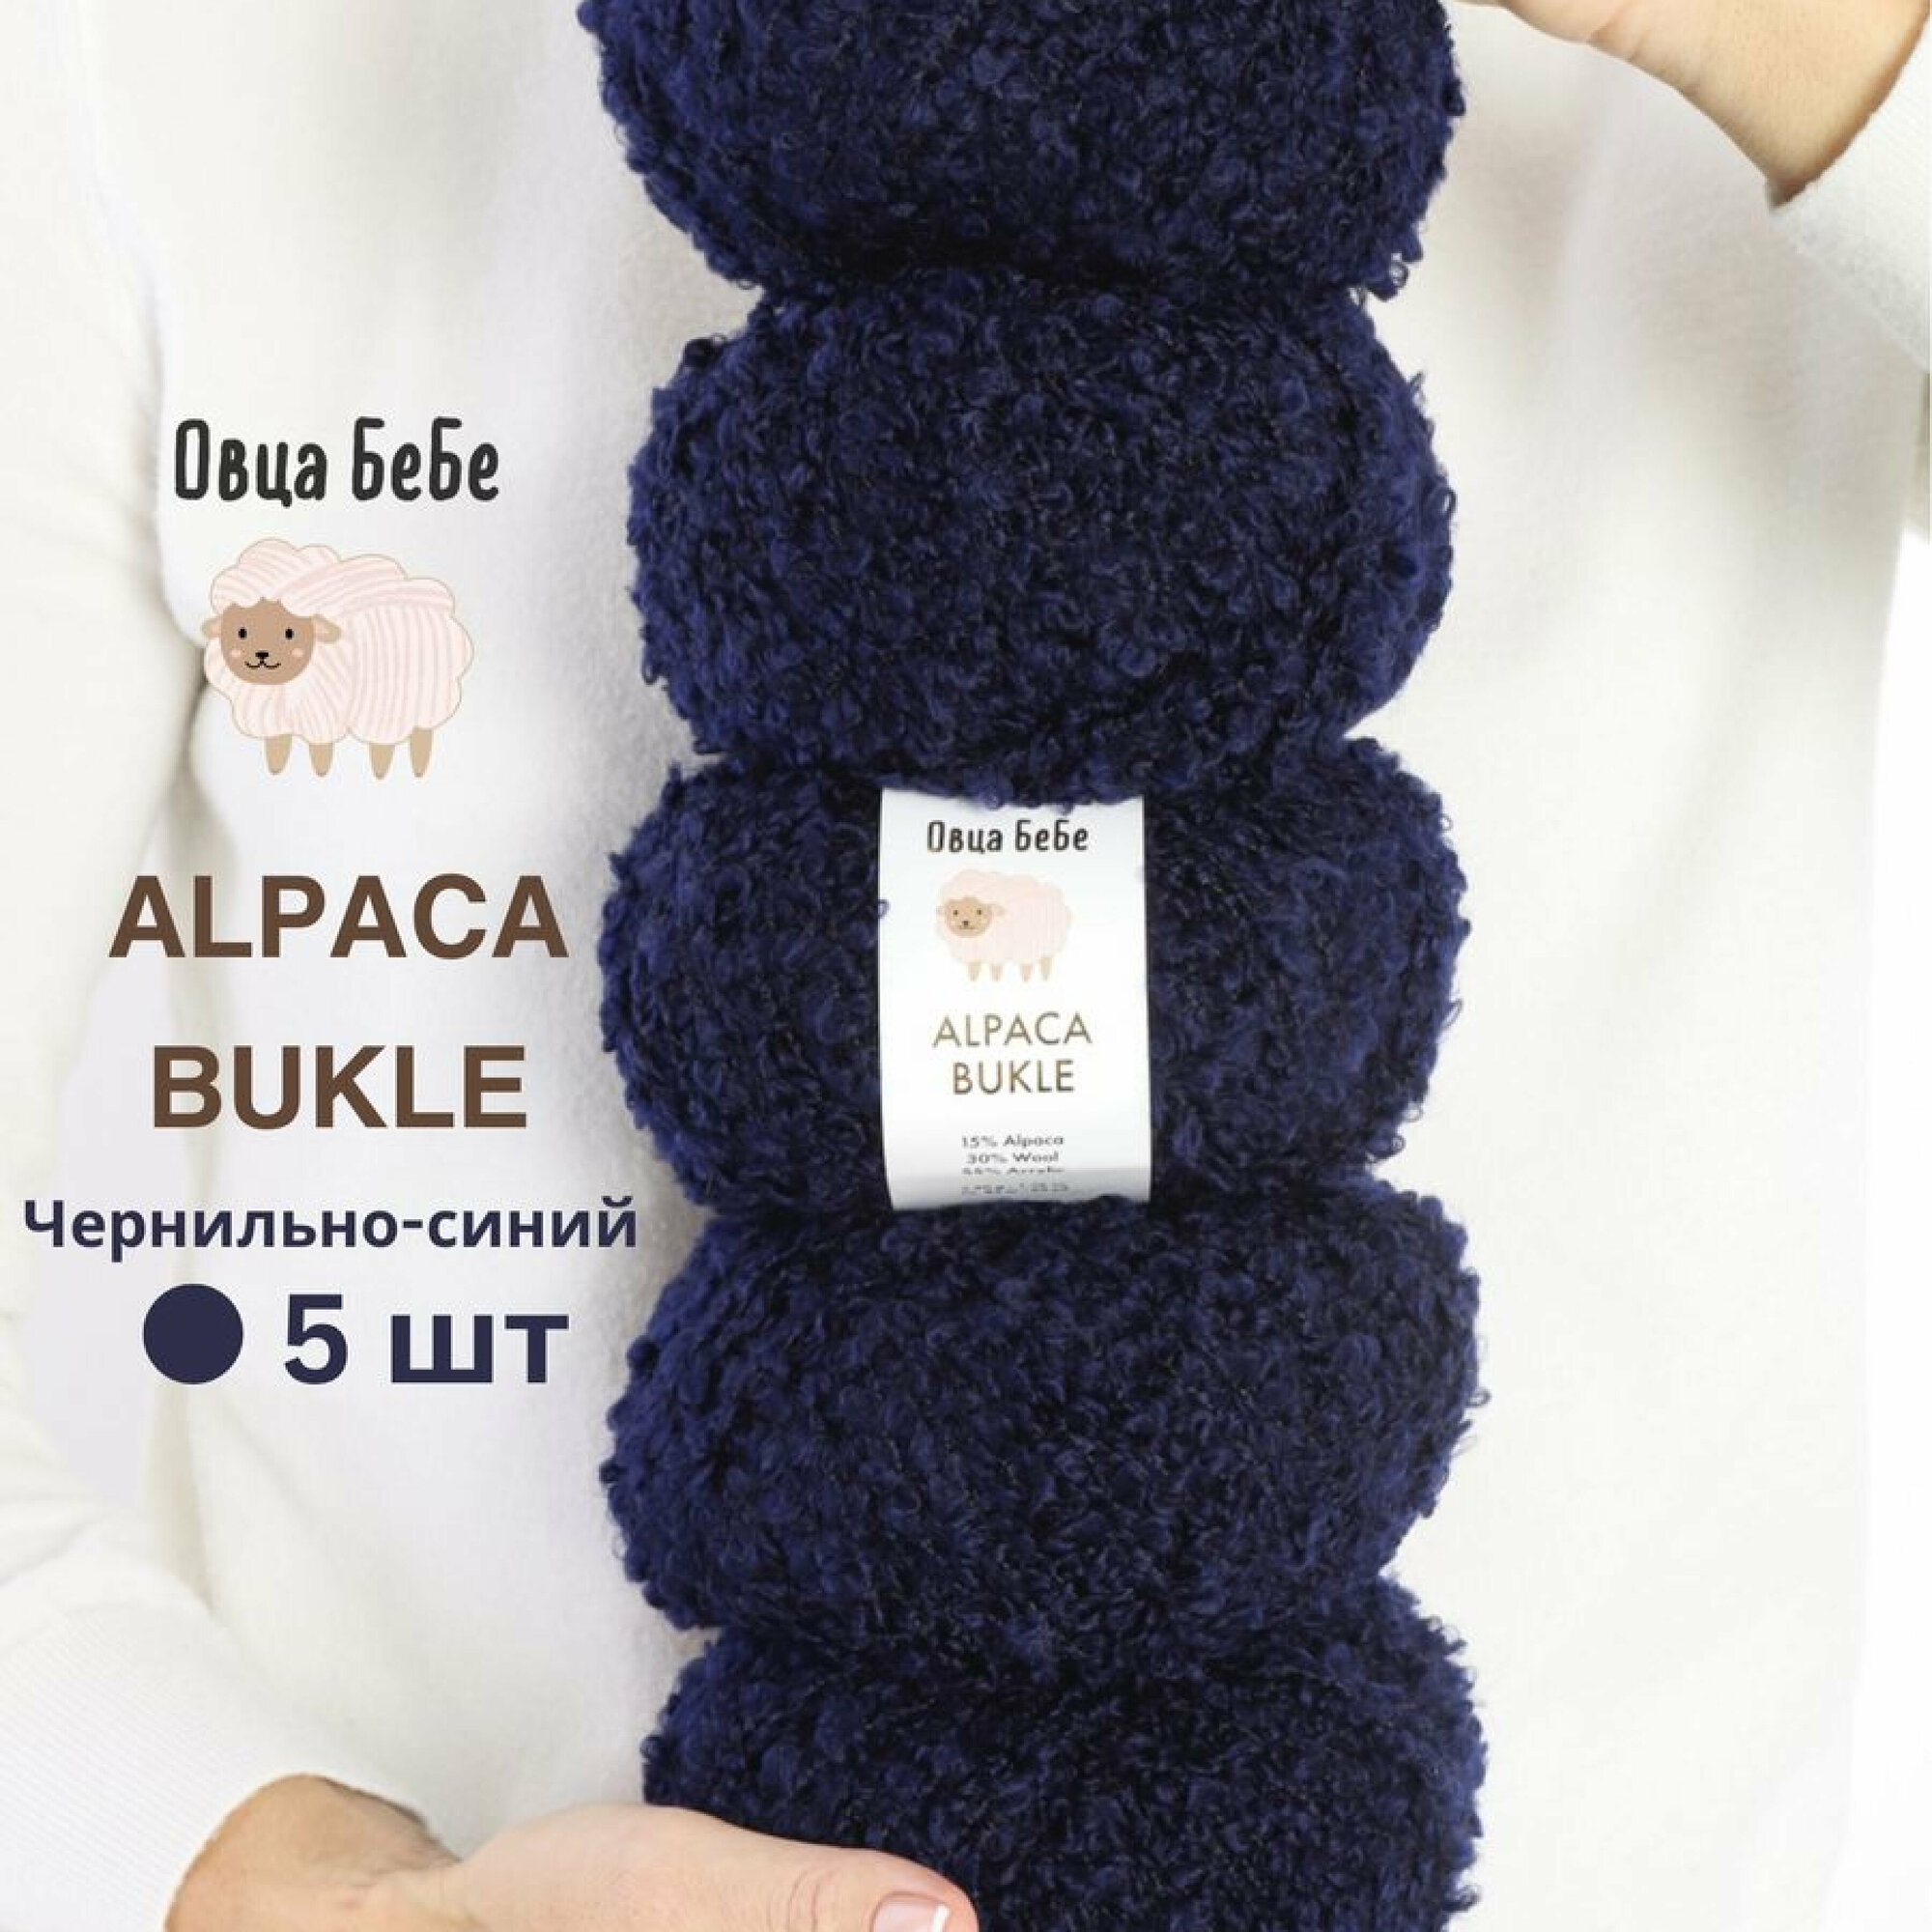 Пряжа для вязания Буклированная Alpaca Bukle, цвет чернильный (набор из 5шт)